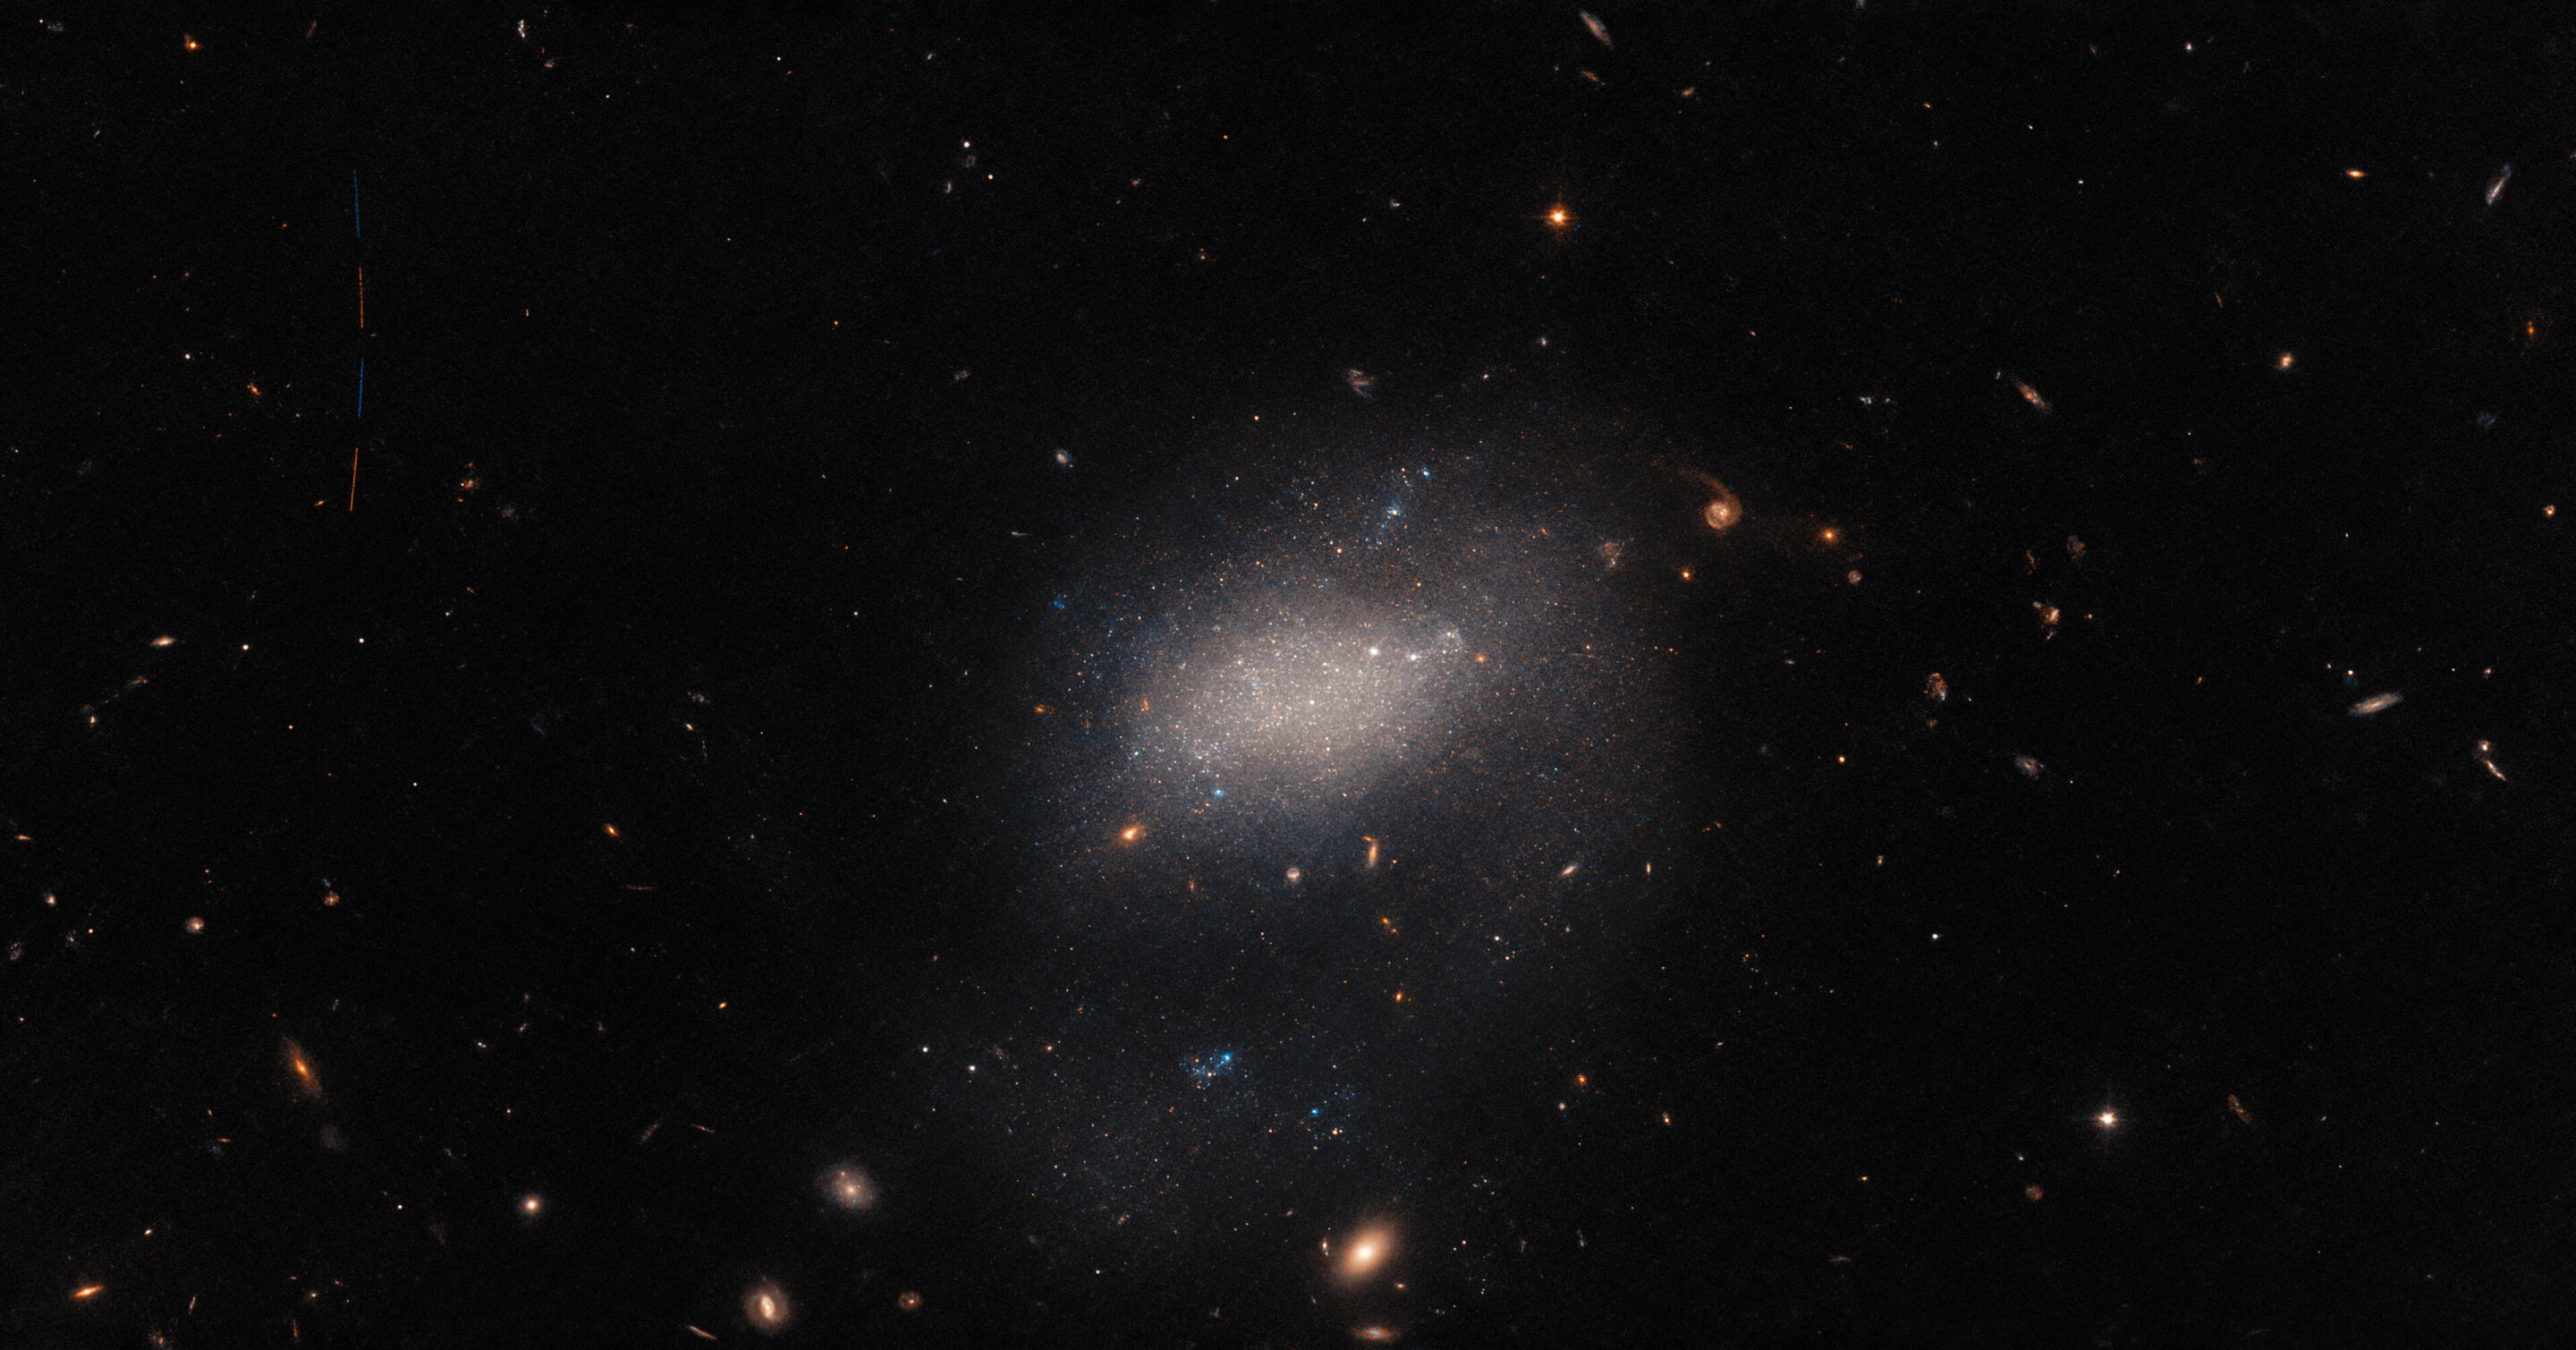 哈勃太空望远镜拍摄小星系UGC 7983 照片隐藏一颗小行星掠过的痕迹